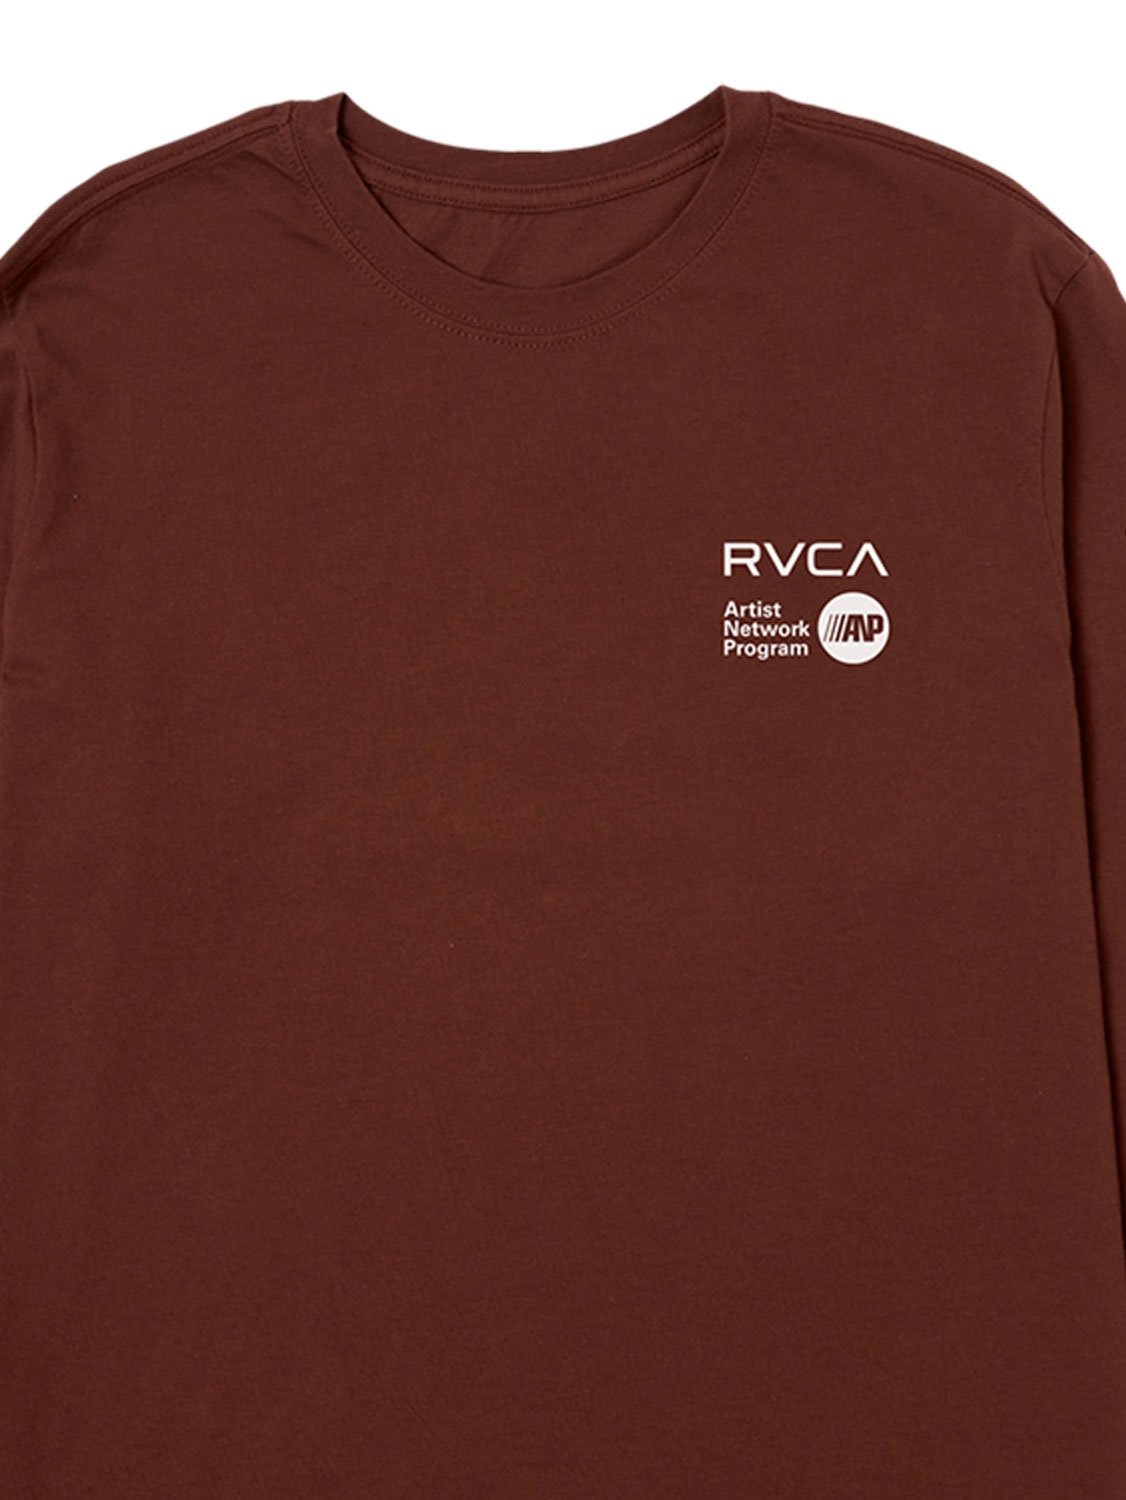 RVCA Men's ANP T-Shirt